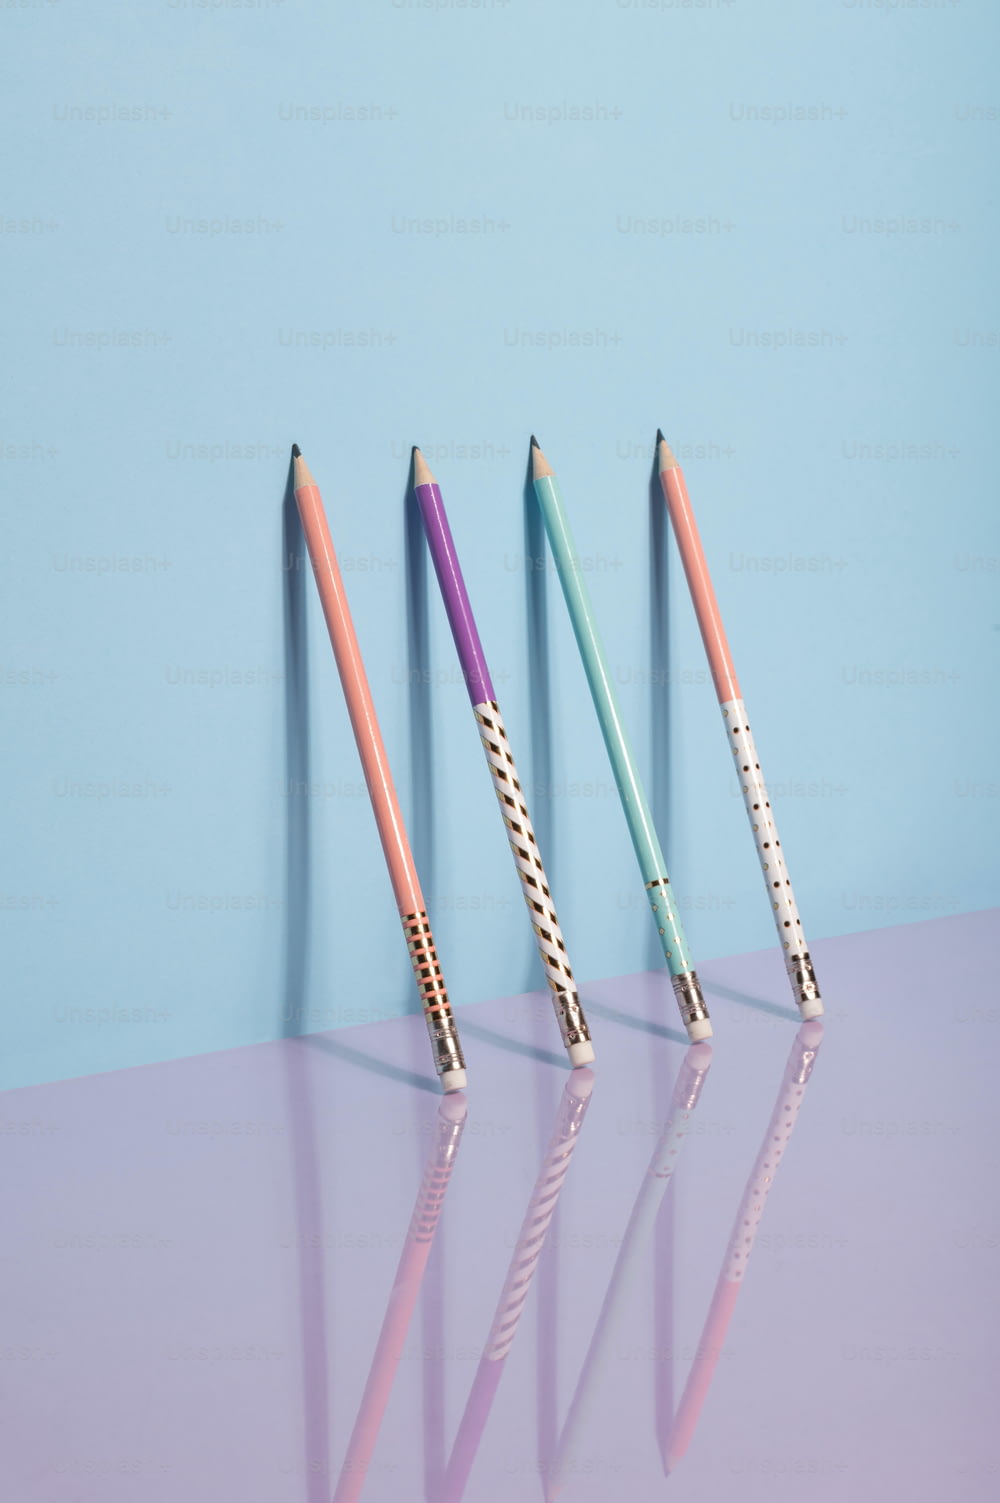 Tre matite colorate diverse sono allineate in fila